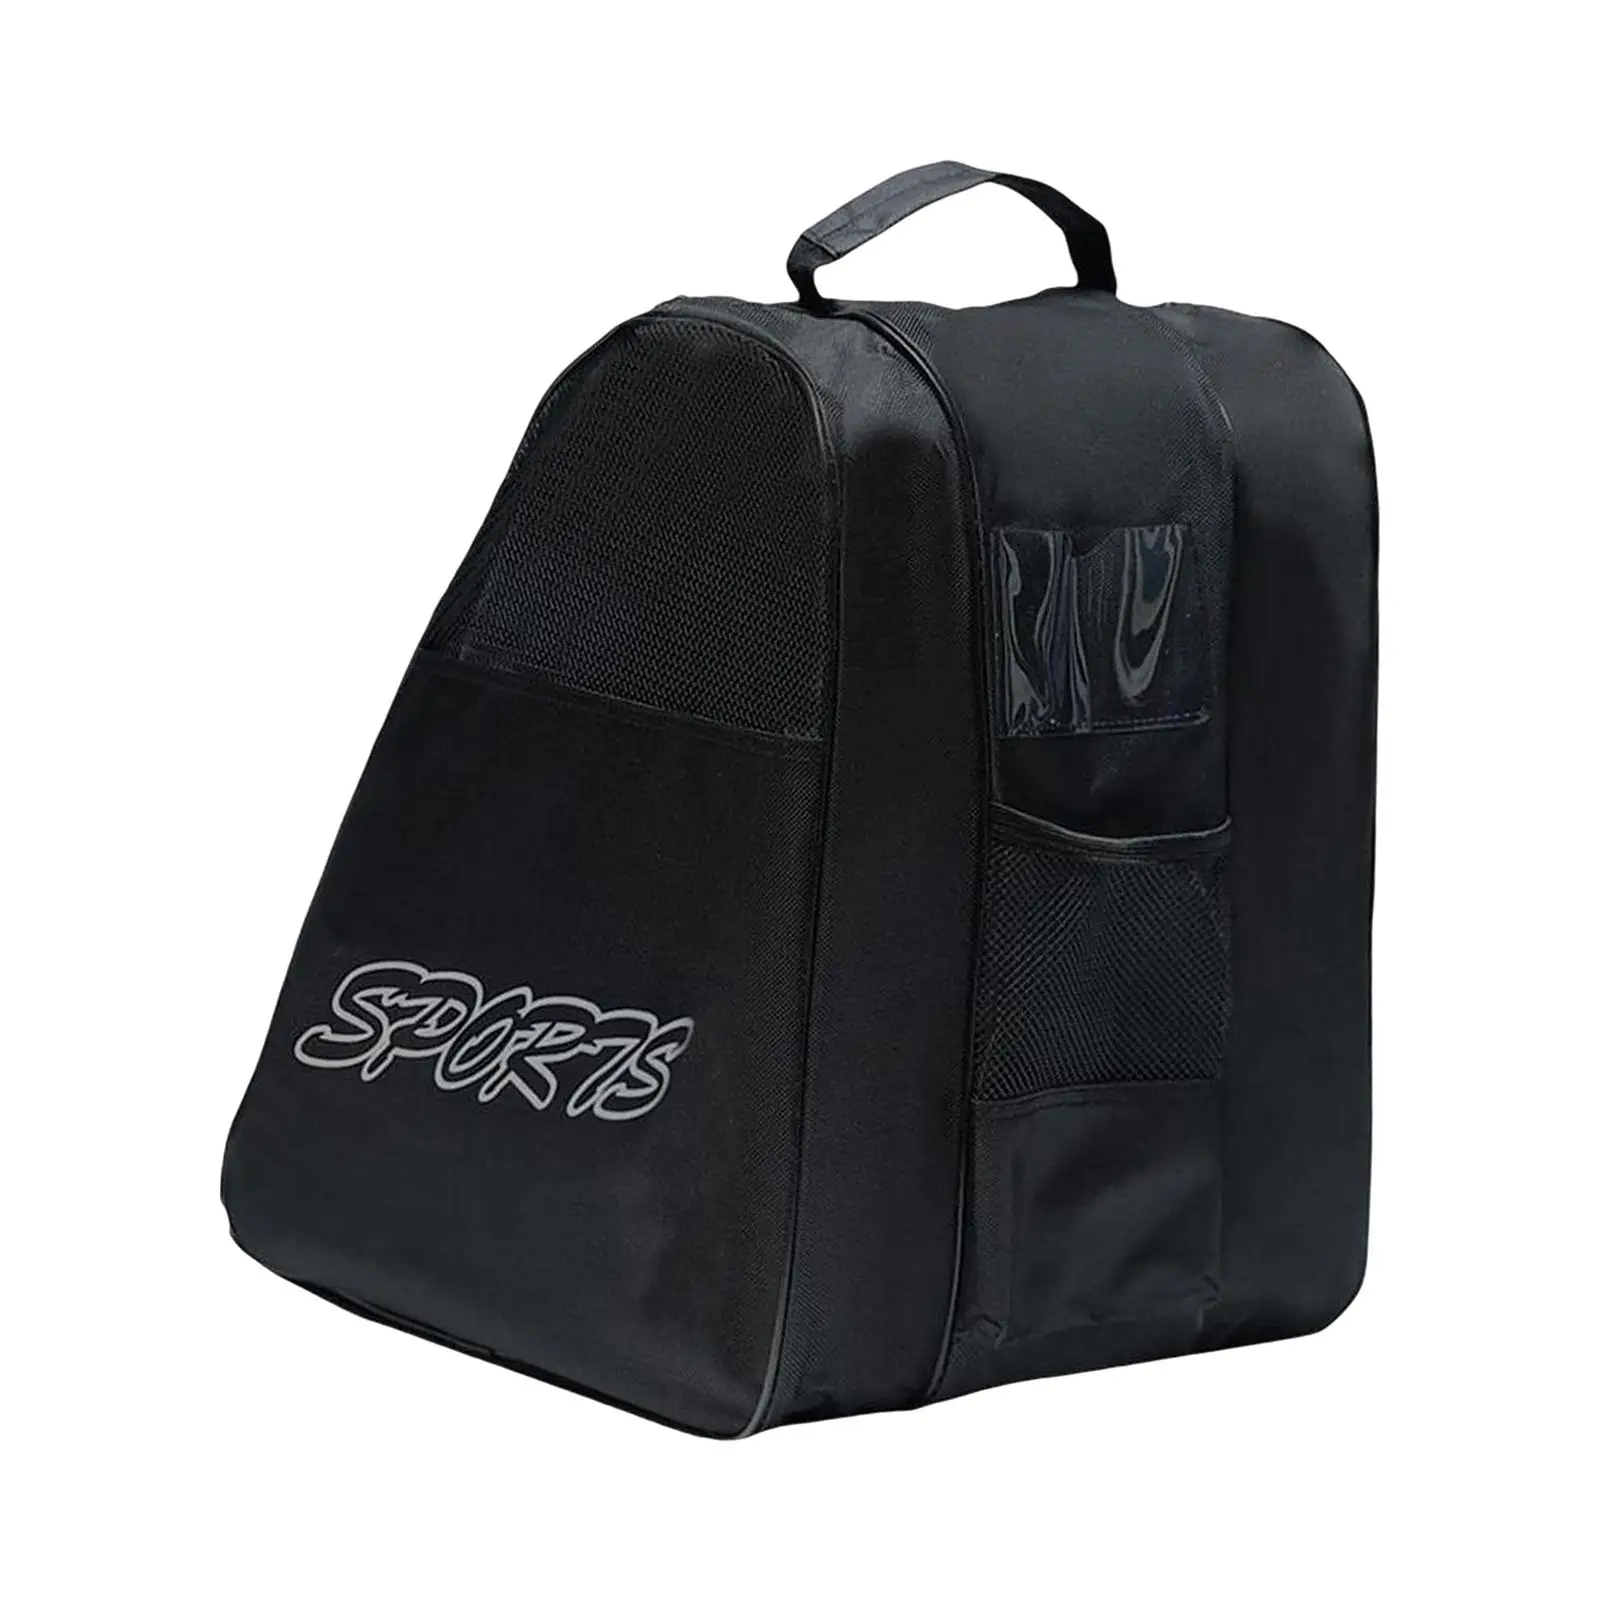 Roller Skate Bags Portable with Adjustable Shoulder Strap Large Capacity Roller Skate Carrier for Quad Skates Figure Skates